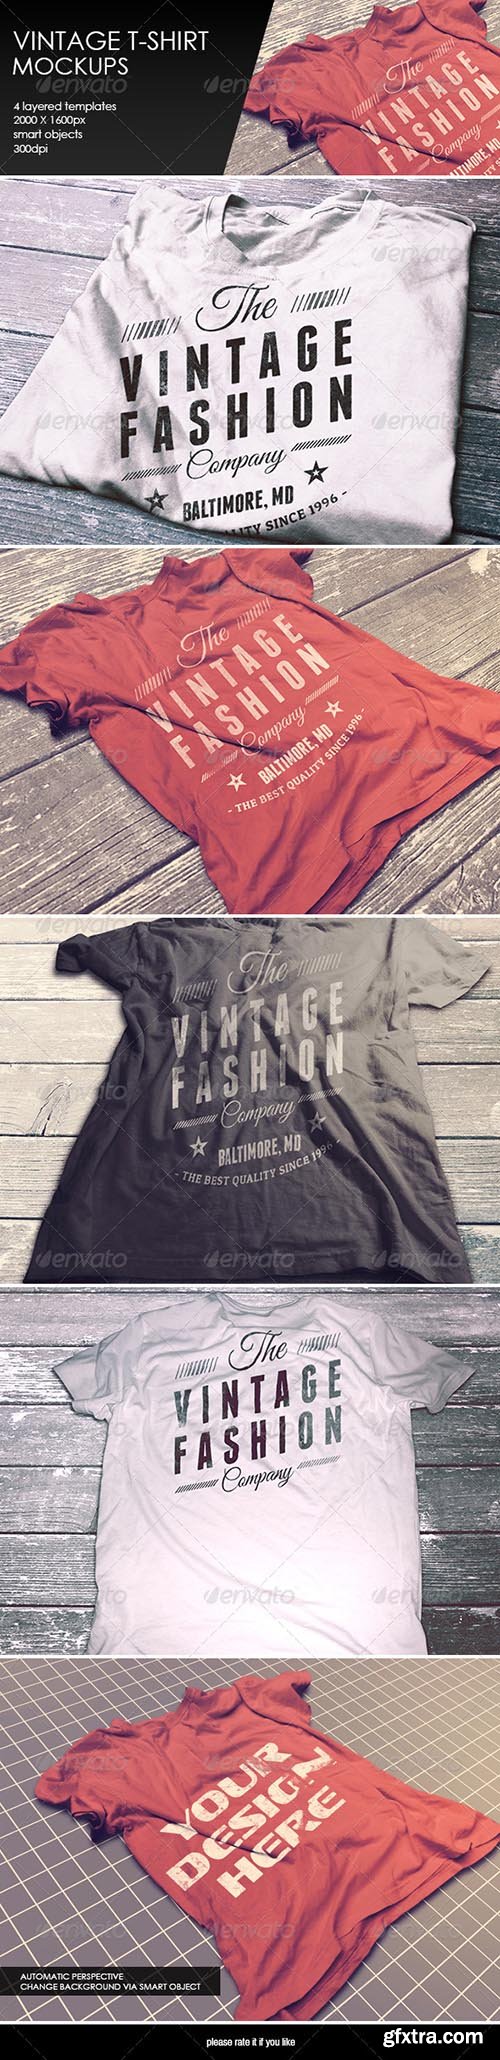 Graphicriver - Vintage T-Shirt Mockup 8376796